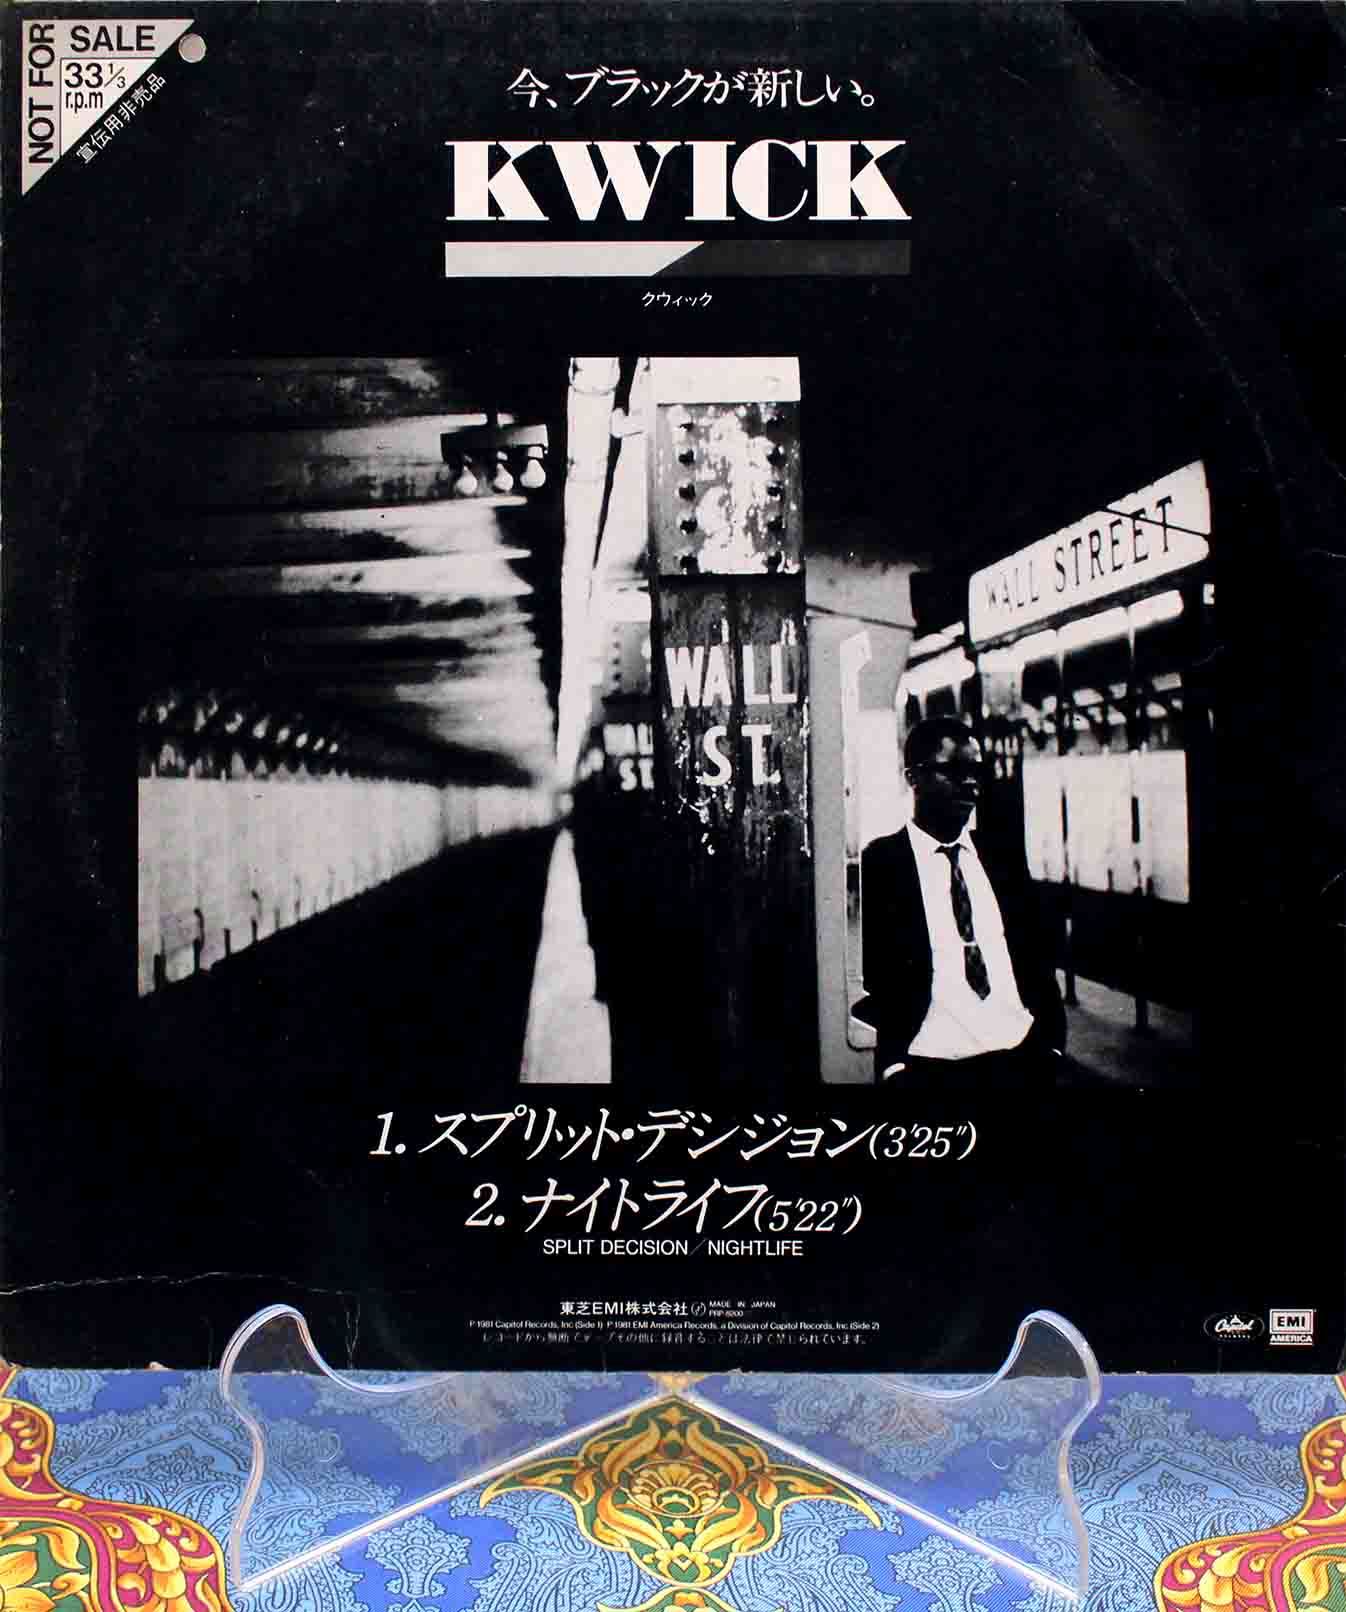 Kwick - Split Decision 01